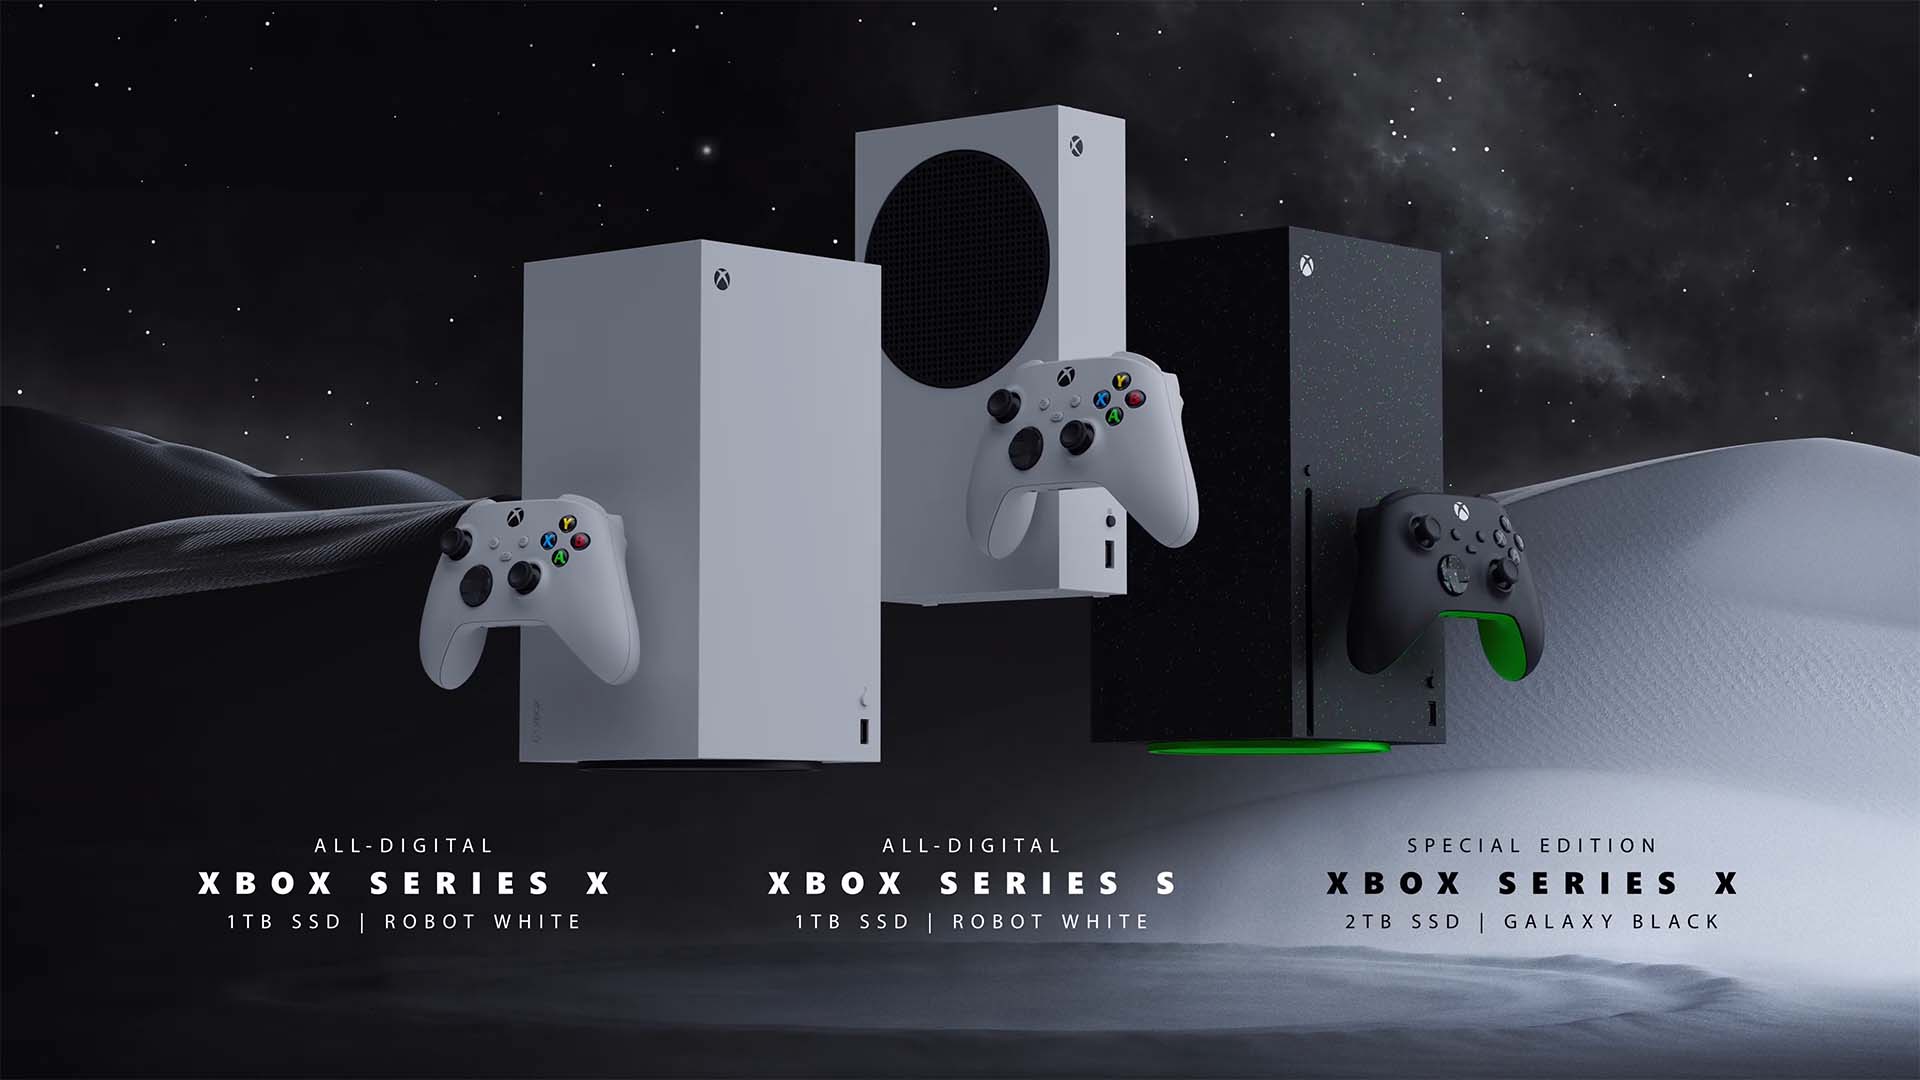 Her yıl düzenlenen Xbox Showcase etkinliği, her yıl oyuncuların gözdesi olmaya devam ediyor. Bu yıl ki etkinlikte tonla yeni oyun ve yeni konsollar duyuruldu. Gelin hep beraber showcase'in içeriğine bakış atalım.